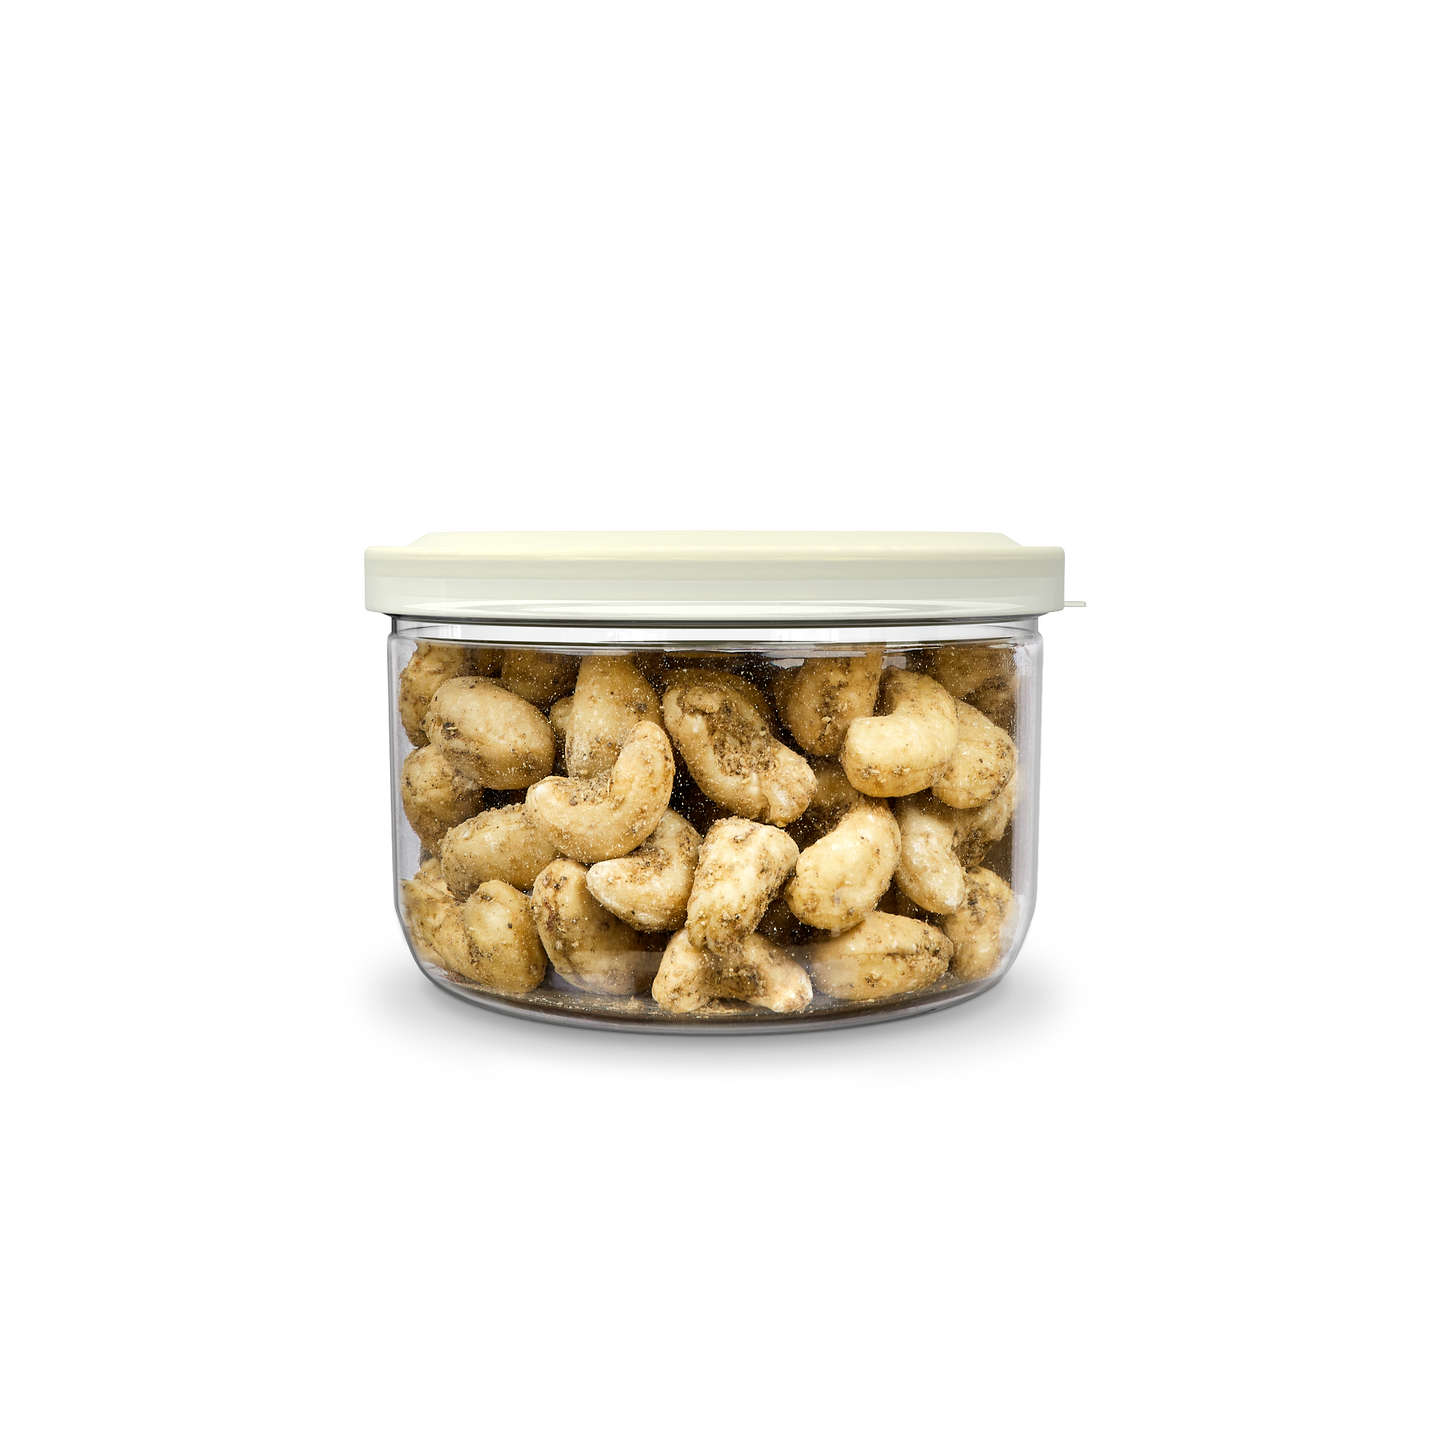 SAO Foods Masala Roasted Cashews 100 gm | Tin Cap PET Jar